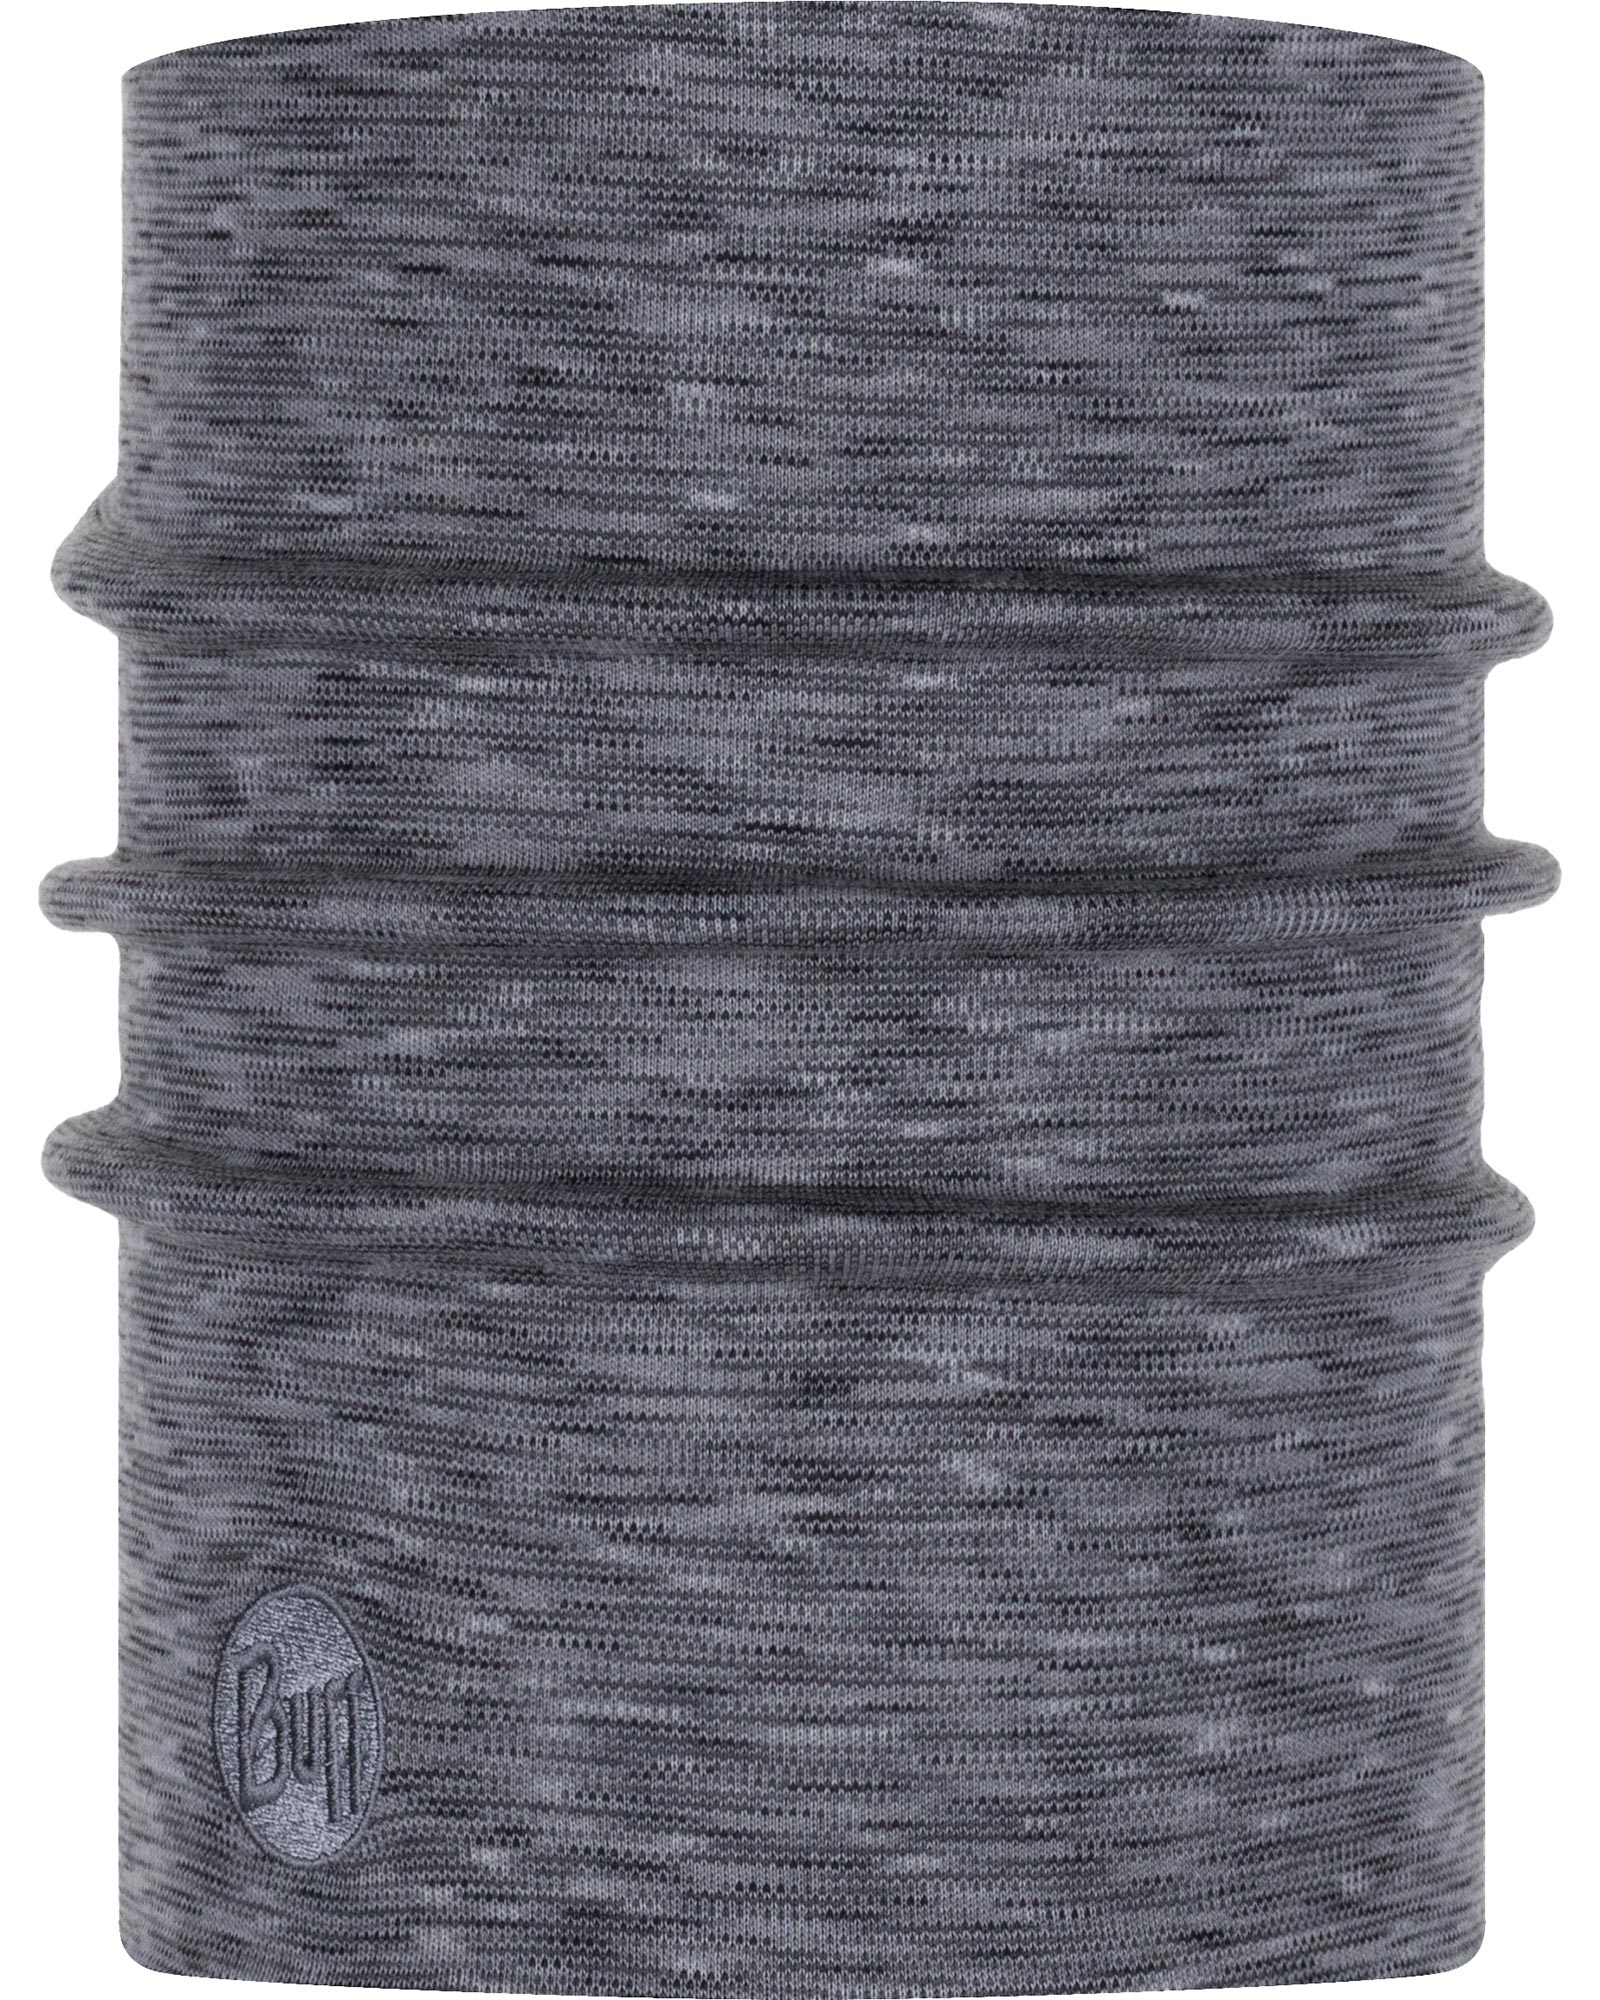 Buff Merino Heavyweight Neck Warmer - Fog Grey Multi Stripes